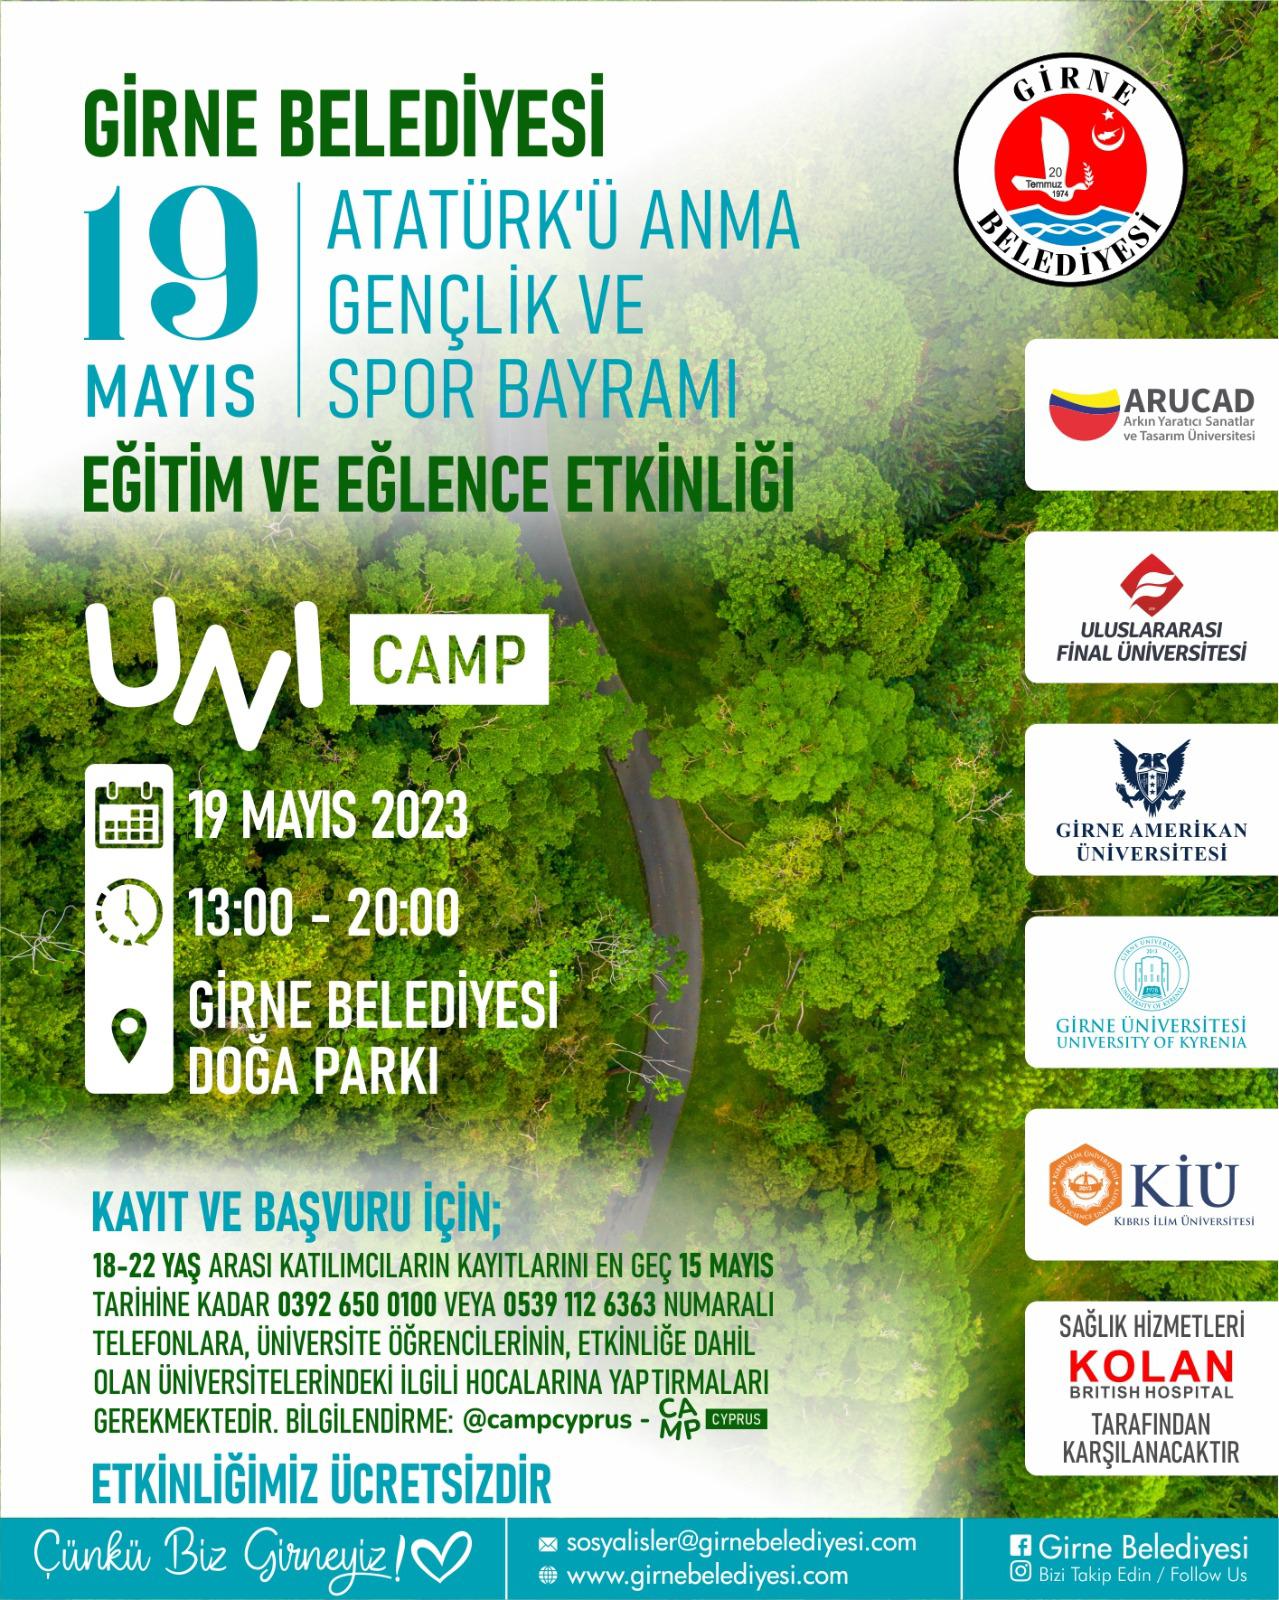 Girne Belediyesi Doğa Parkı, 19 Mayıs'ta 'UniCamp' etkinliği  gerçekleştiriyor – BRTK